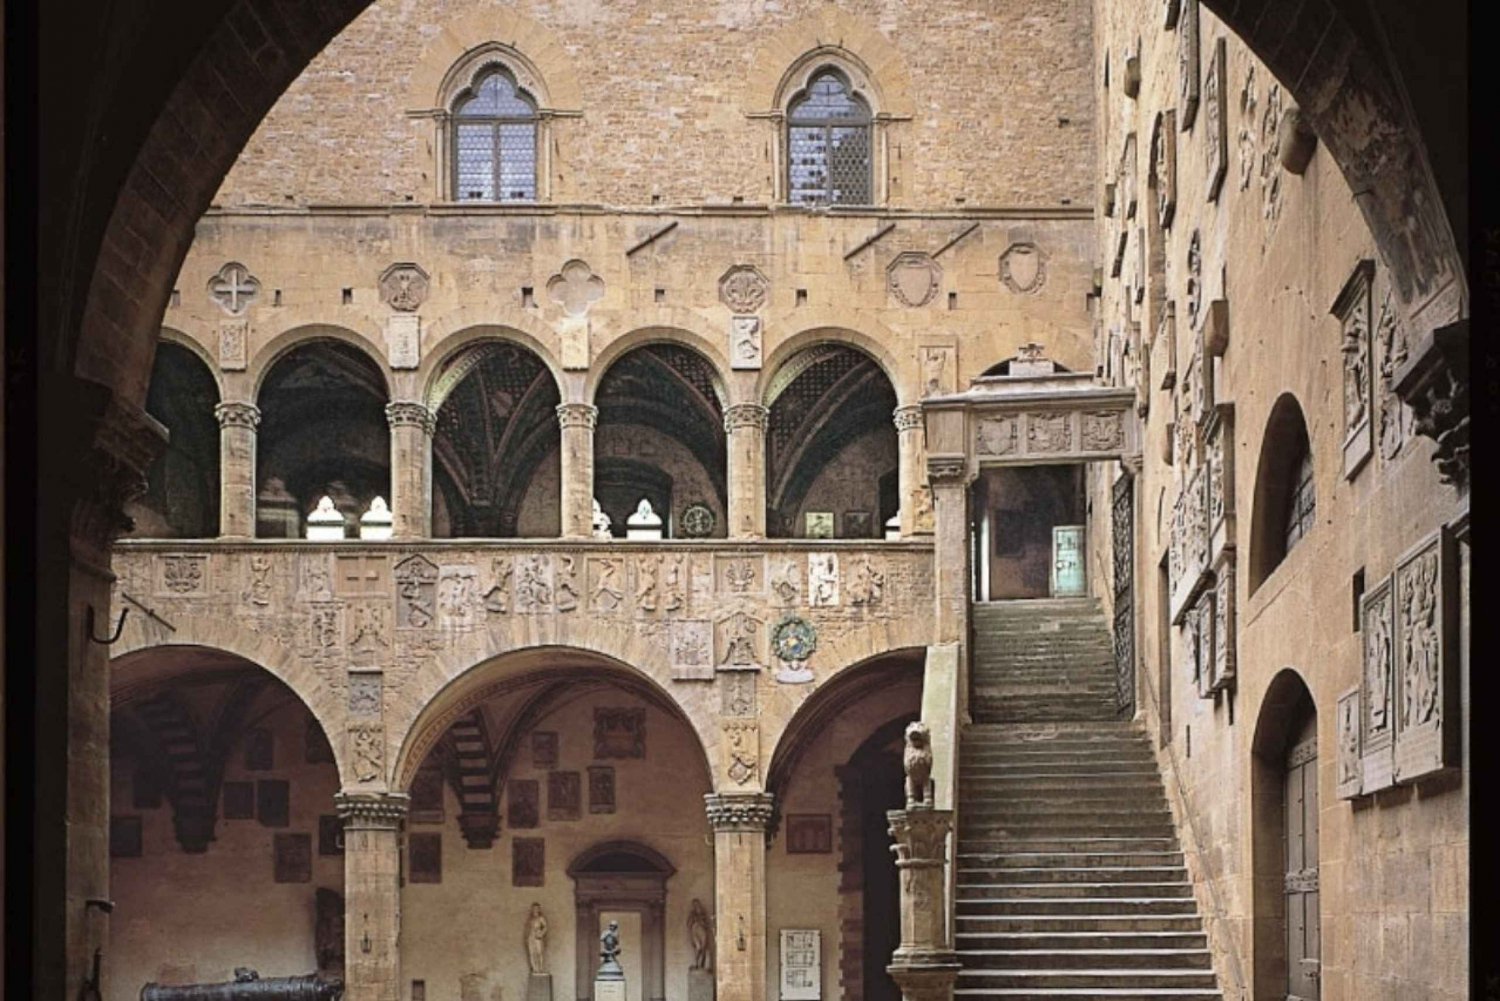 Firenze: Kombinasjonsbillett til Bargello-museet med 5 attraksjoner